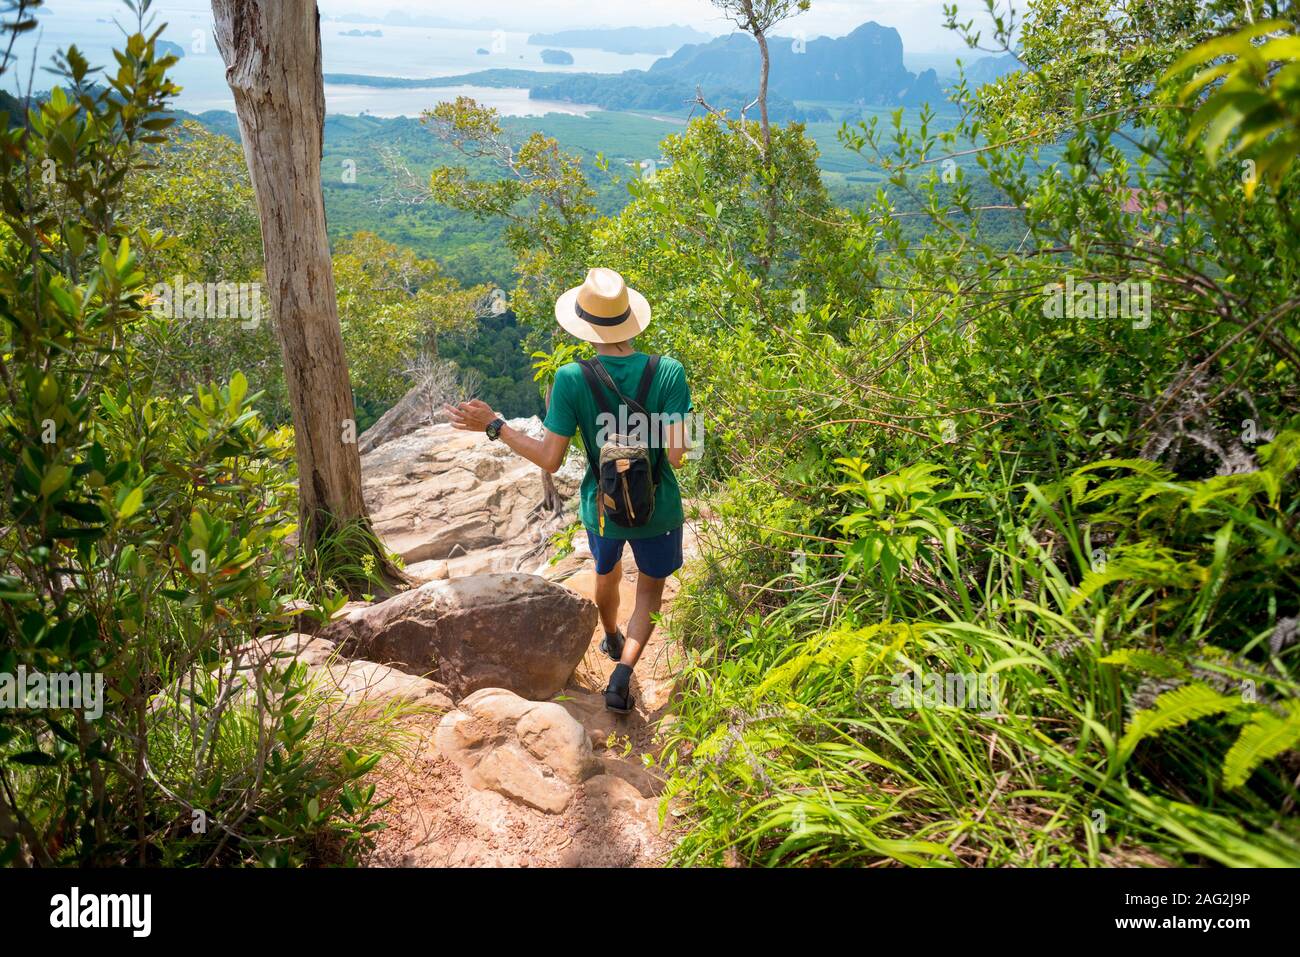 Le meilleur des randonnées le long du chemin rocailleux en forêt tropicale avec paysage magnifique et bien en dessous de la mer à l'horizon, à Krabi, Thaïlande. Sentier nature Nak Ngon Khao Banque D'Images